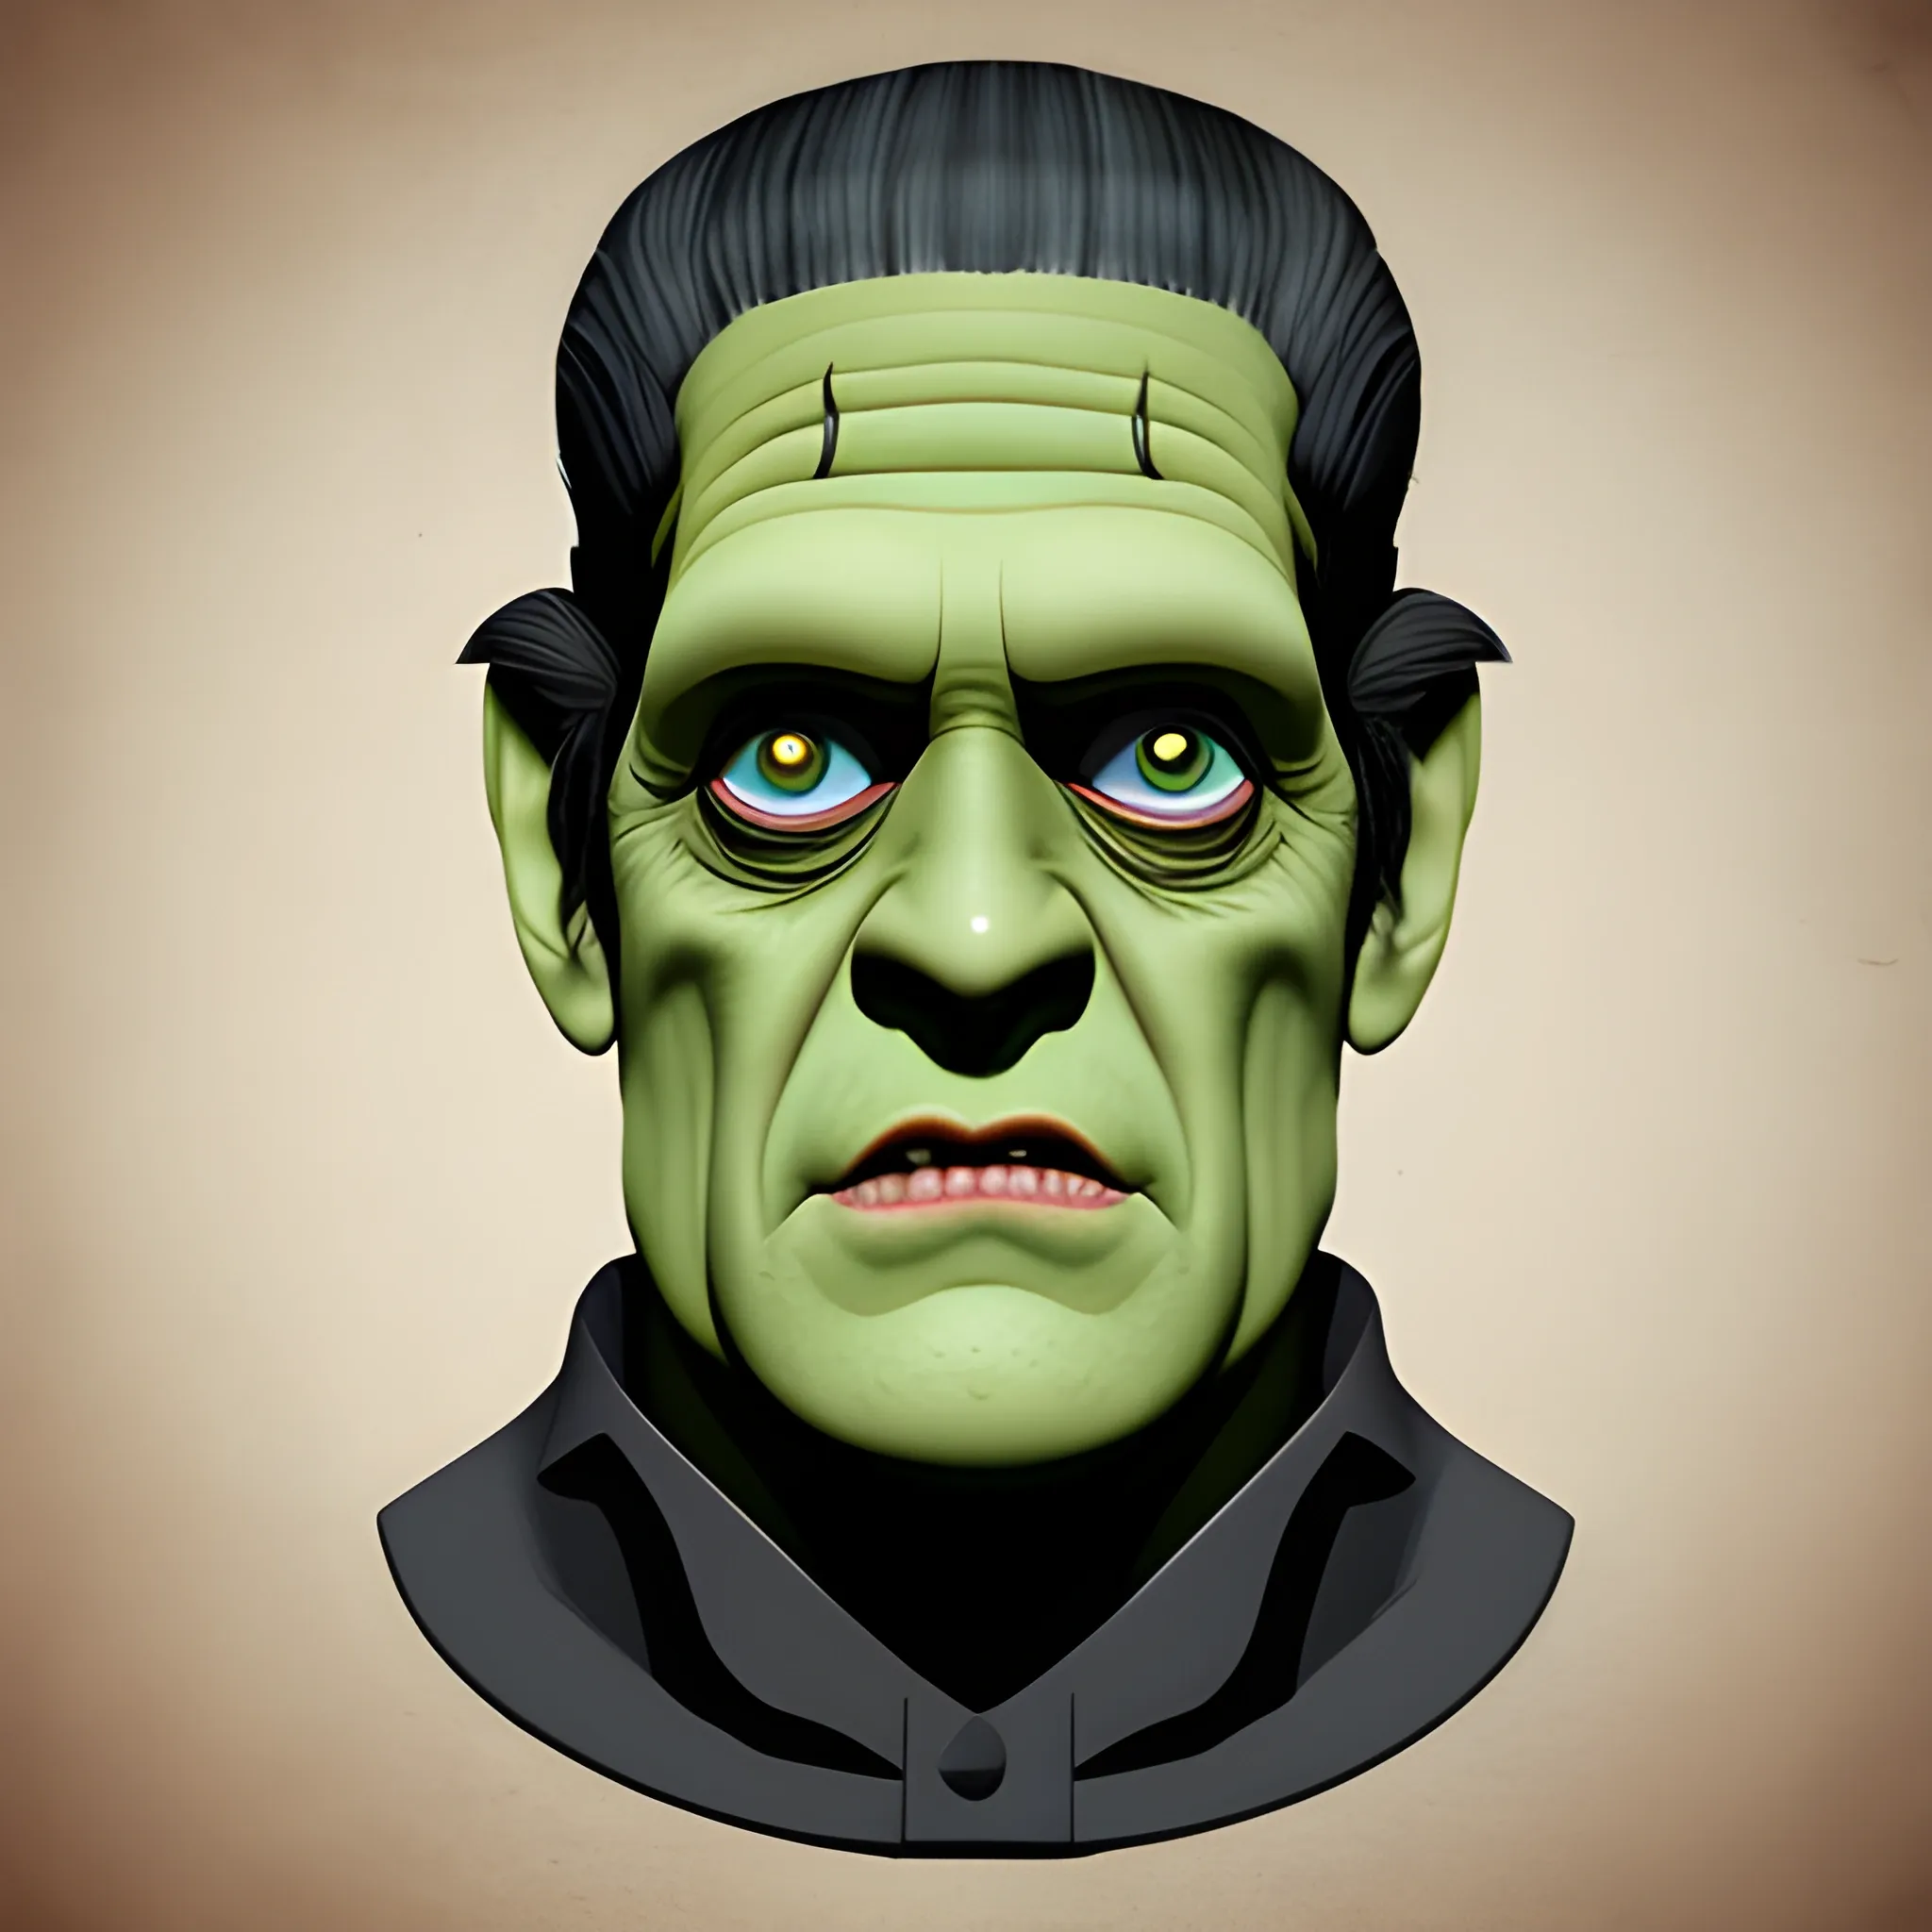 Herman munster Frankenstein monster flat head illustration 